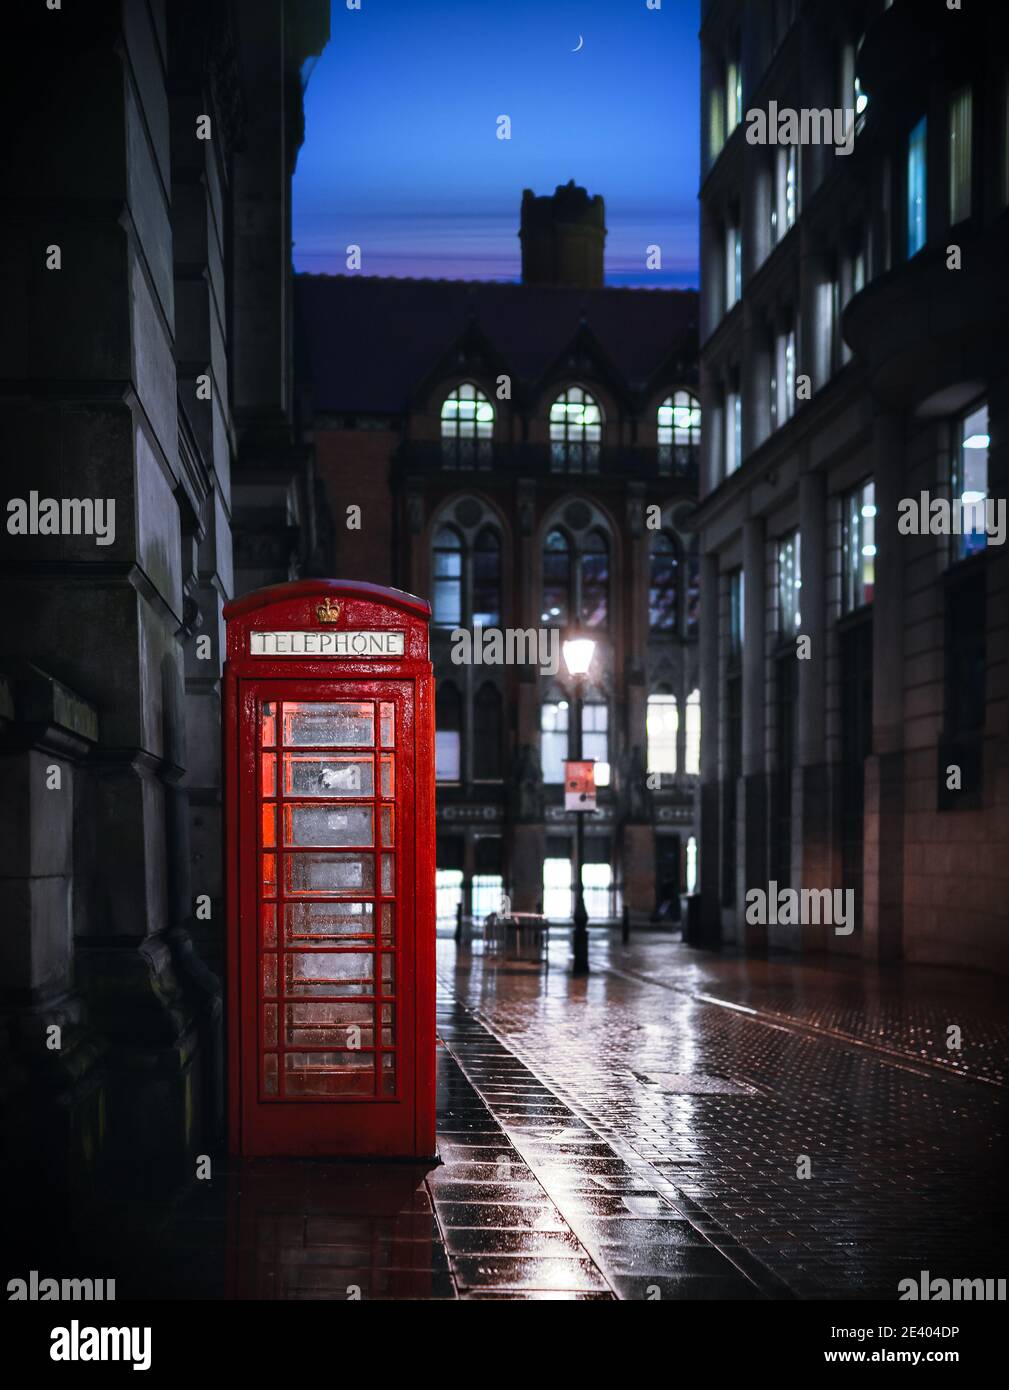 Calle desierta por la noche con el tradicional teléfono británico rojo real la caja iluminó la luz que se refleja en el agua después de la lluvia transparente noche cielo luna vista inquietante Foto de stock